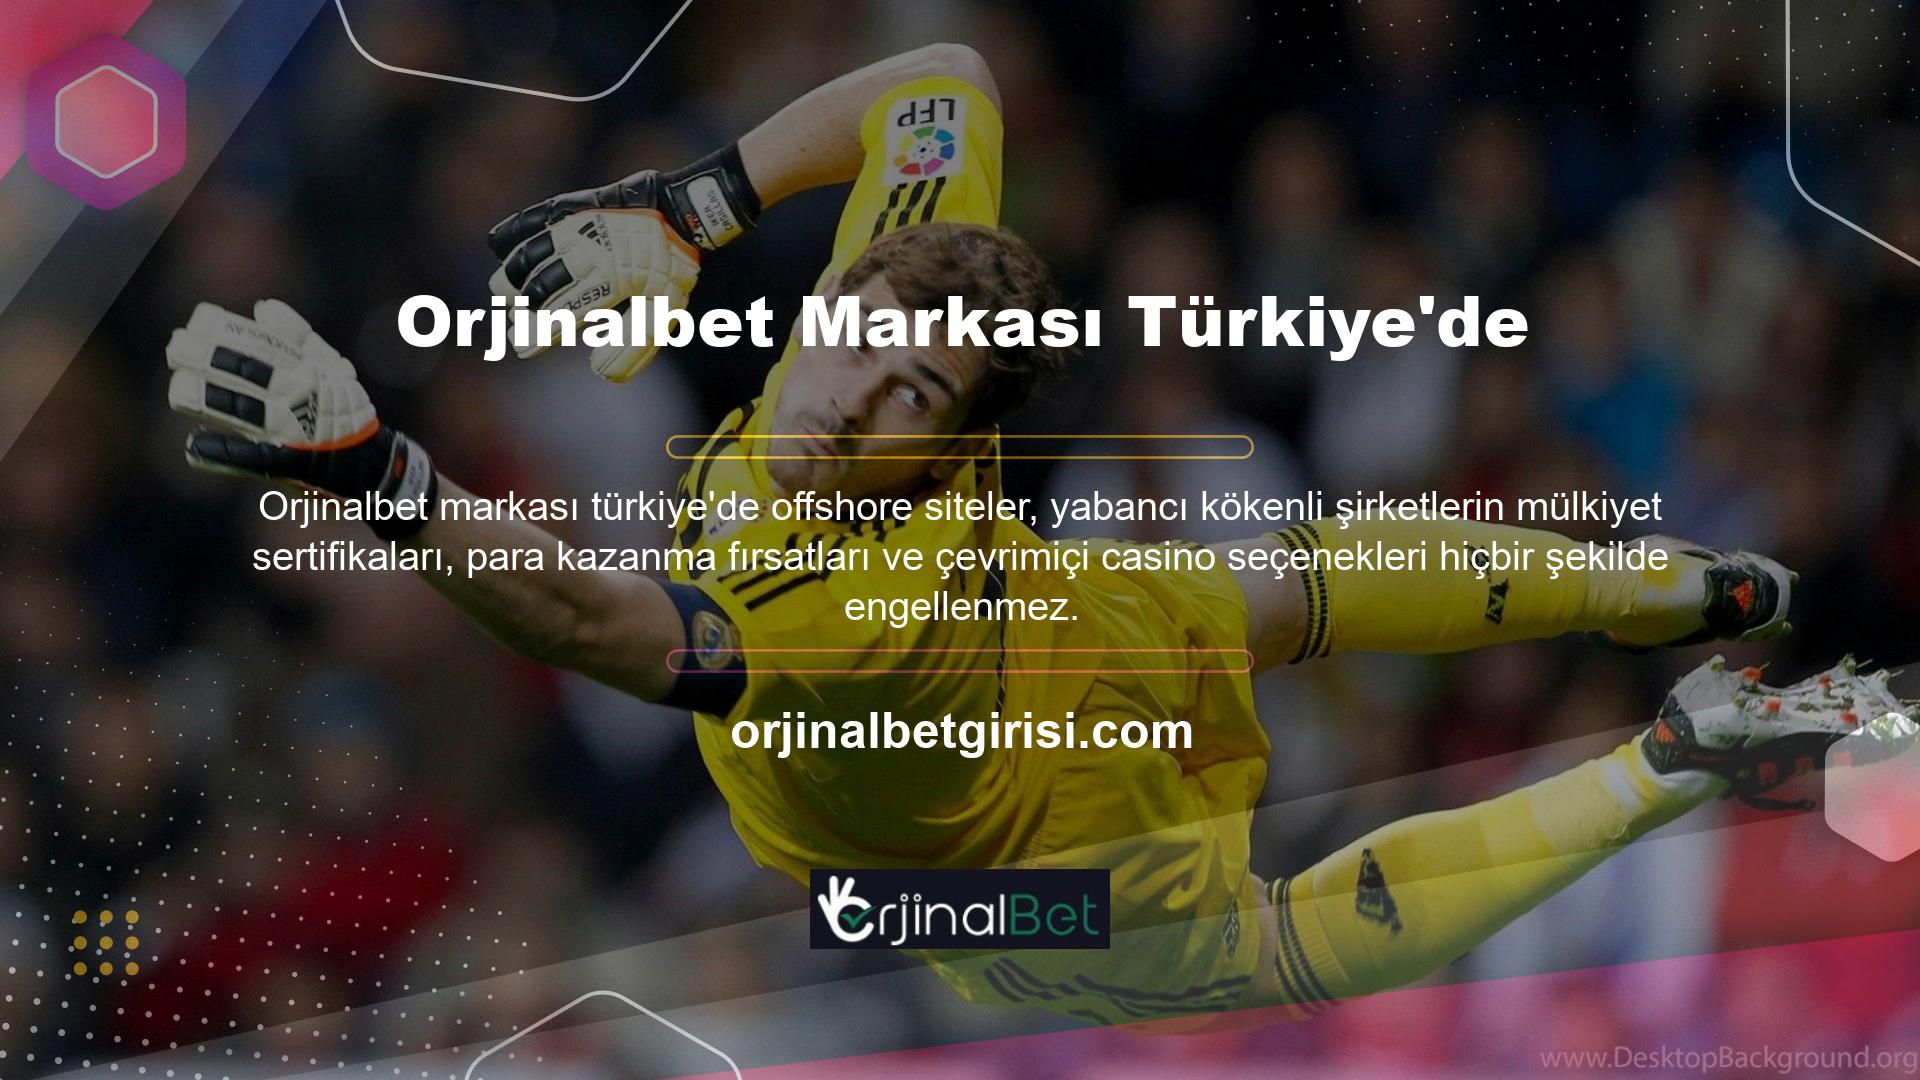 Türkiye'de yeni bir ortaklık adresi olan Orjinalbet açıldı